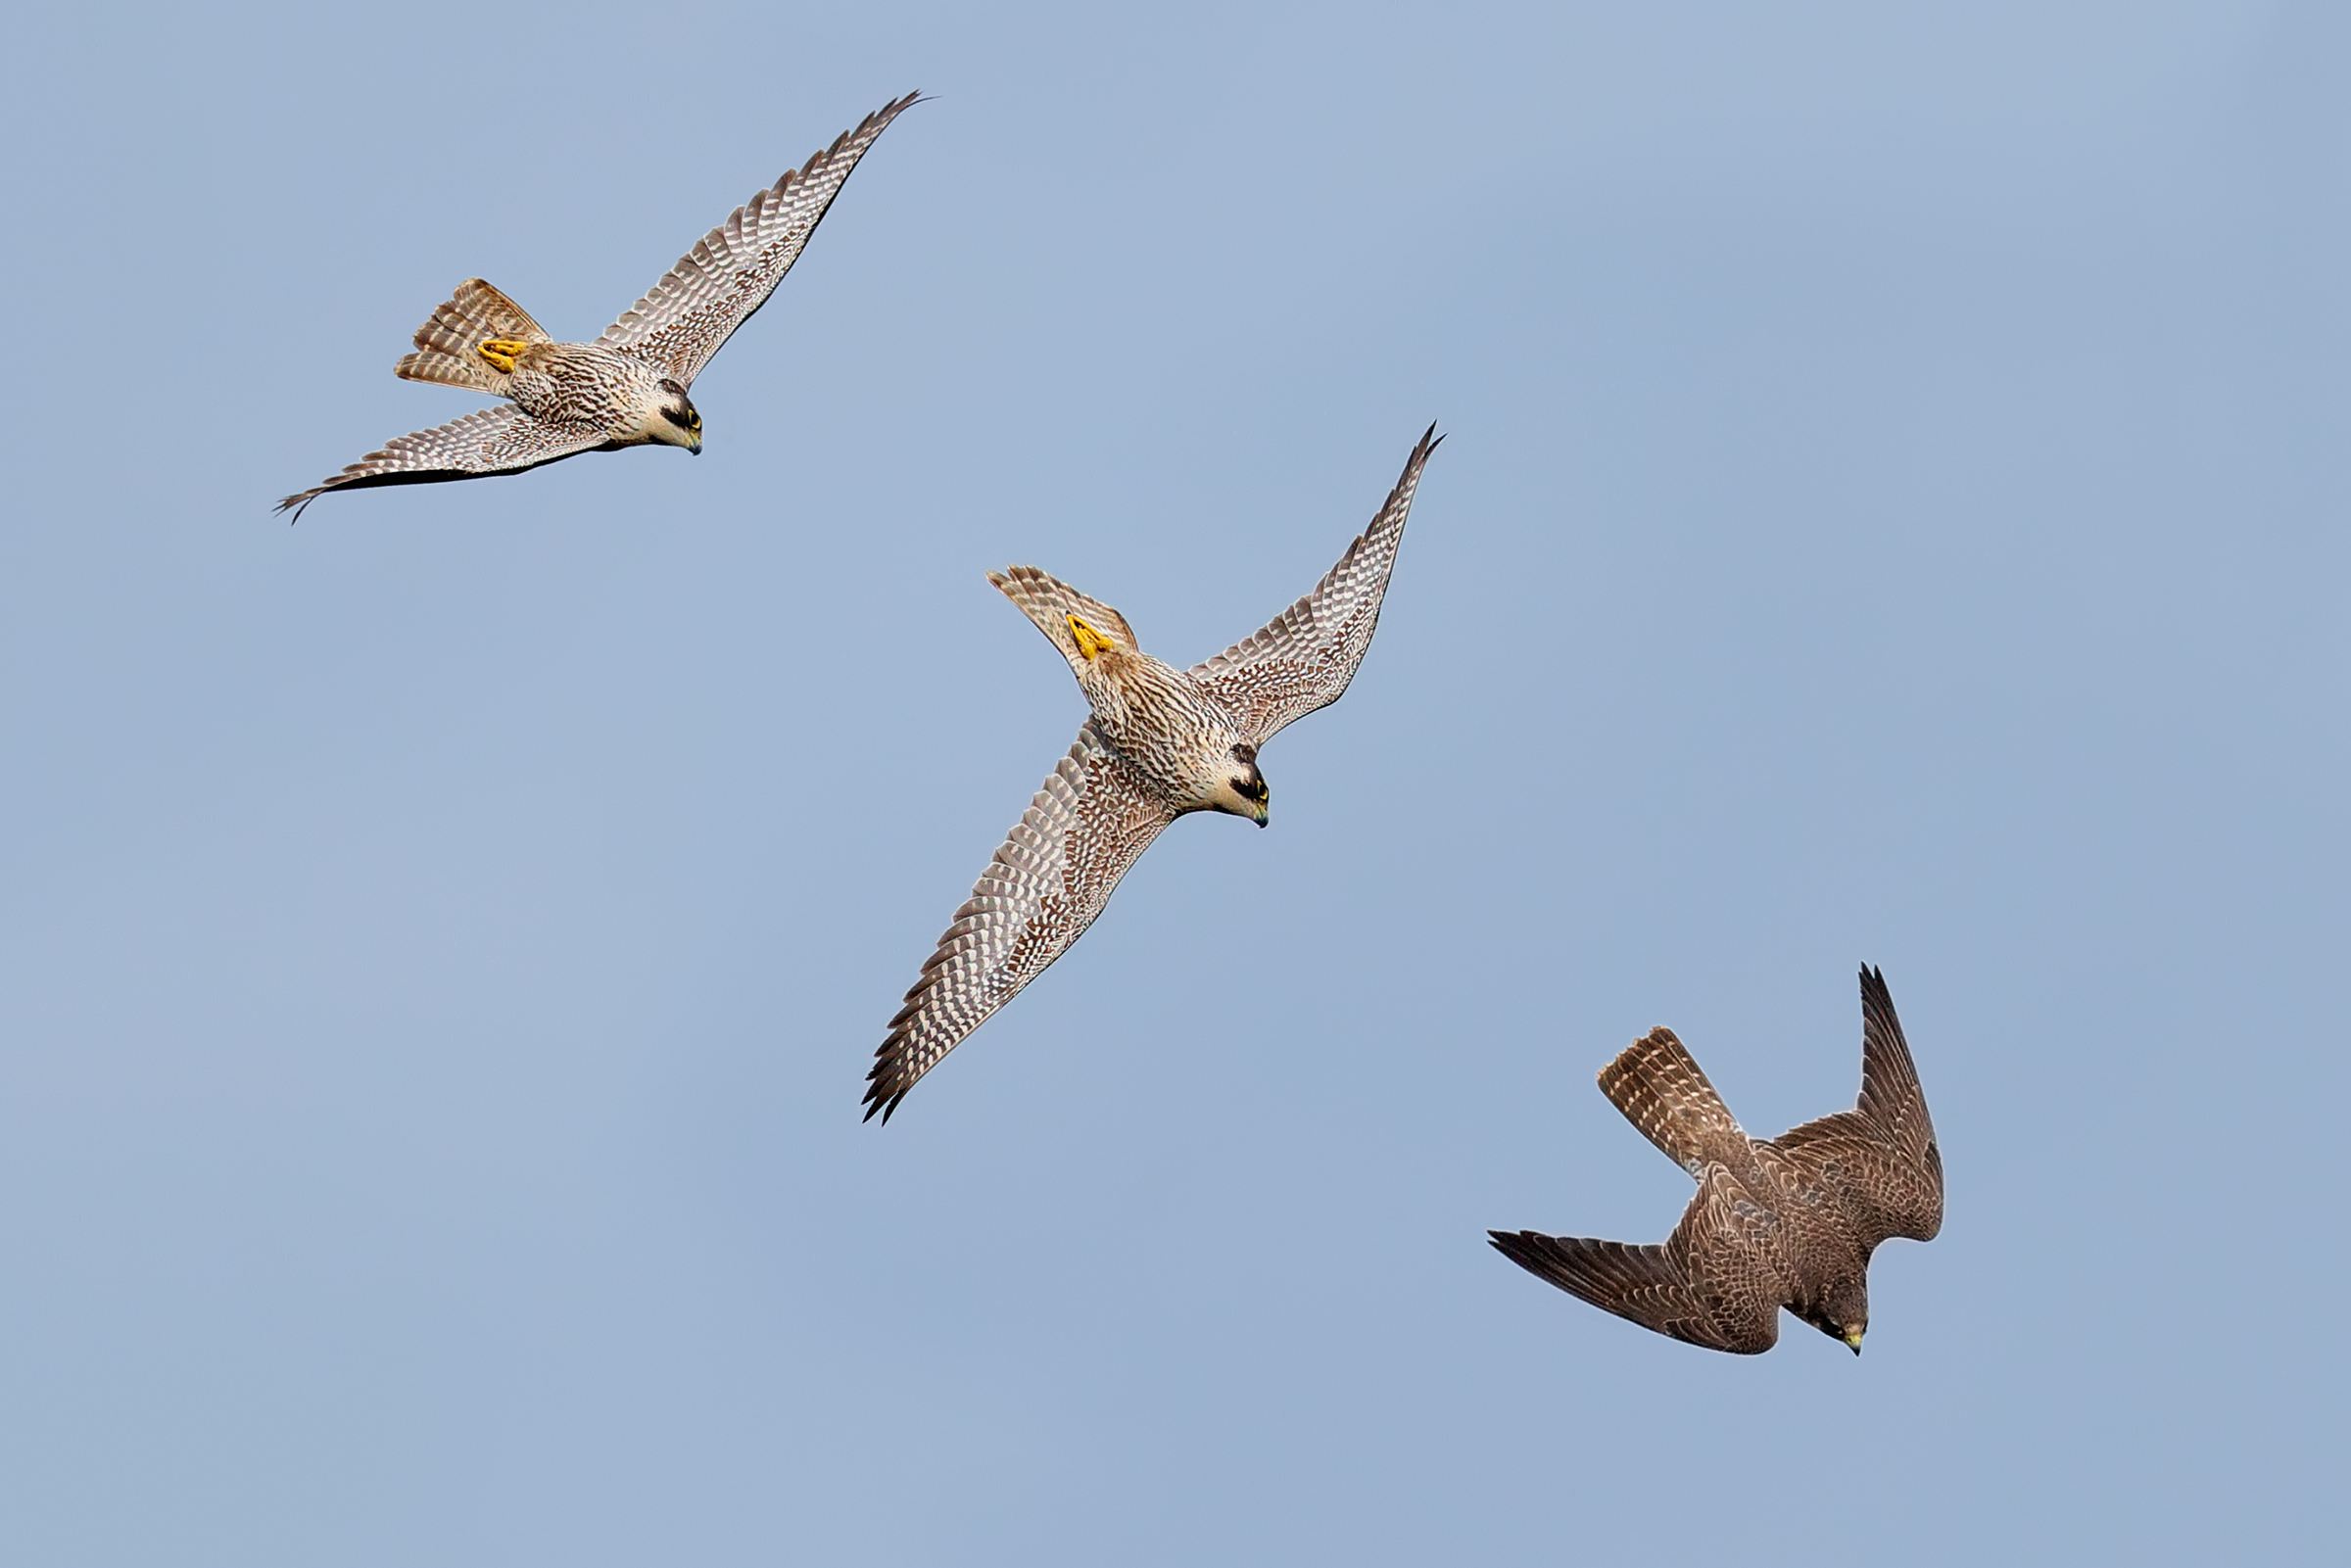 The peregrine falcon attack...